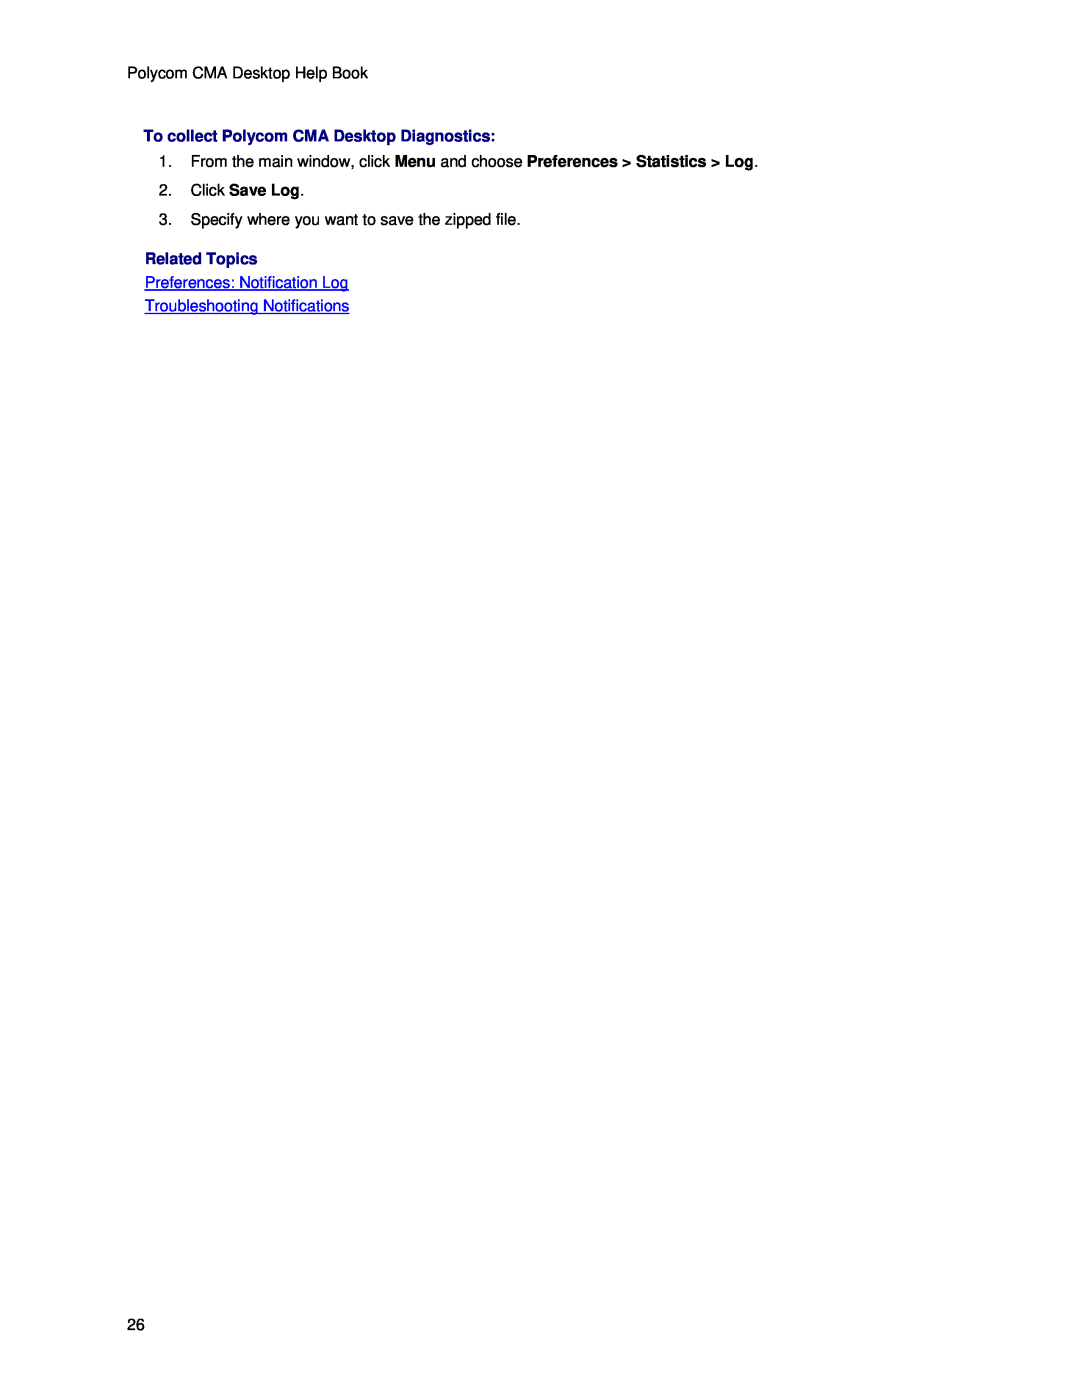 Polycom 5.2.0, 3725-26792-003 manual To collect Polycom CMA Desktop Diagnostics, Click Save Log, Related Topics 